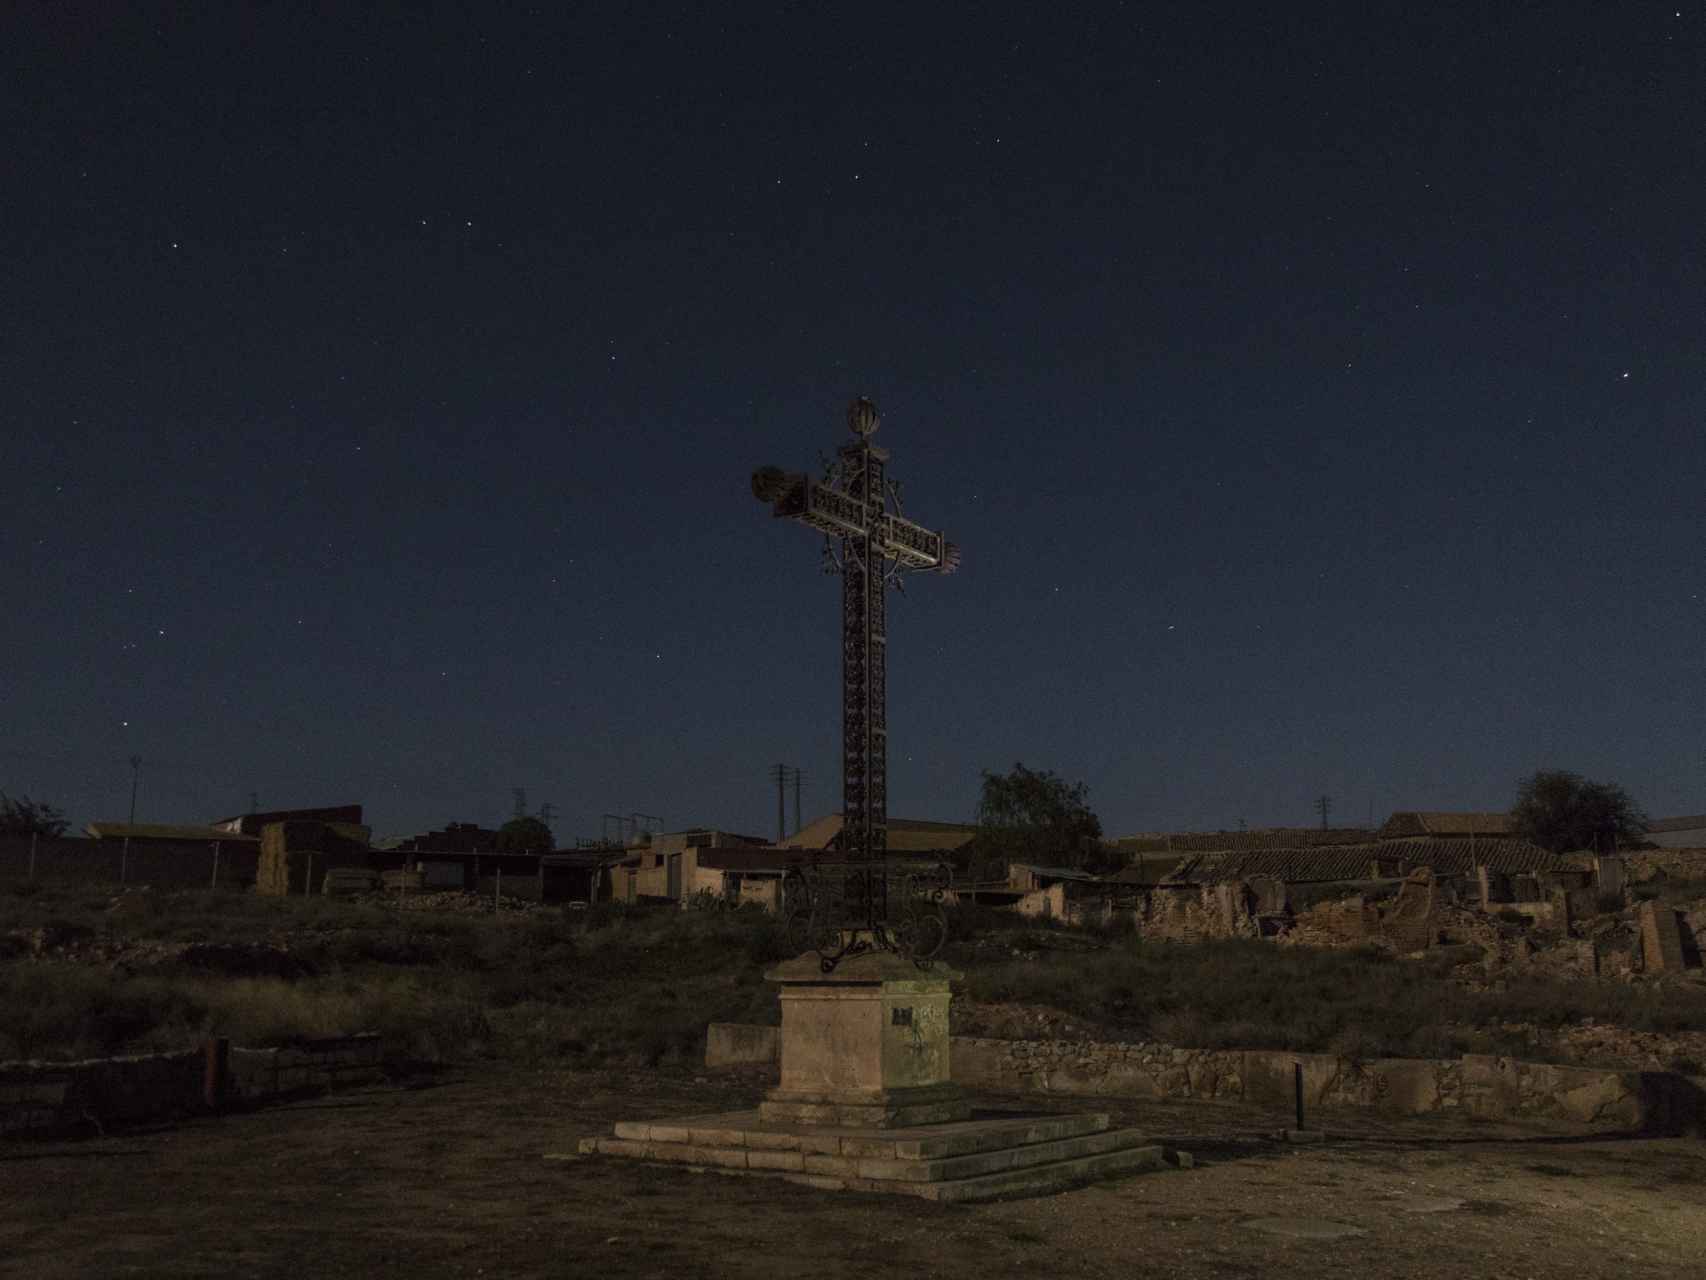 Franco ordenó colocar una gran cruz metálica en el lugar donde se quemaron a los caídos de la batalla de Belchite.